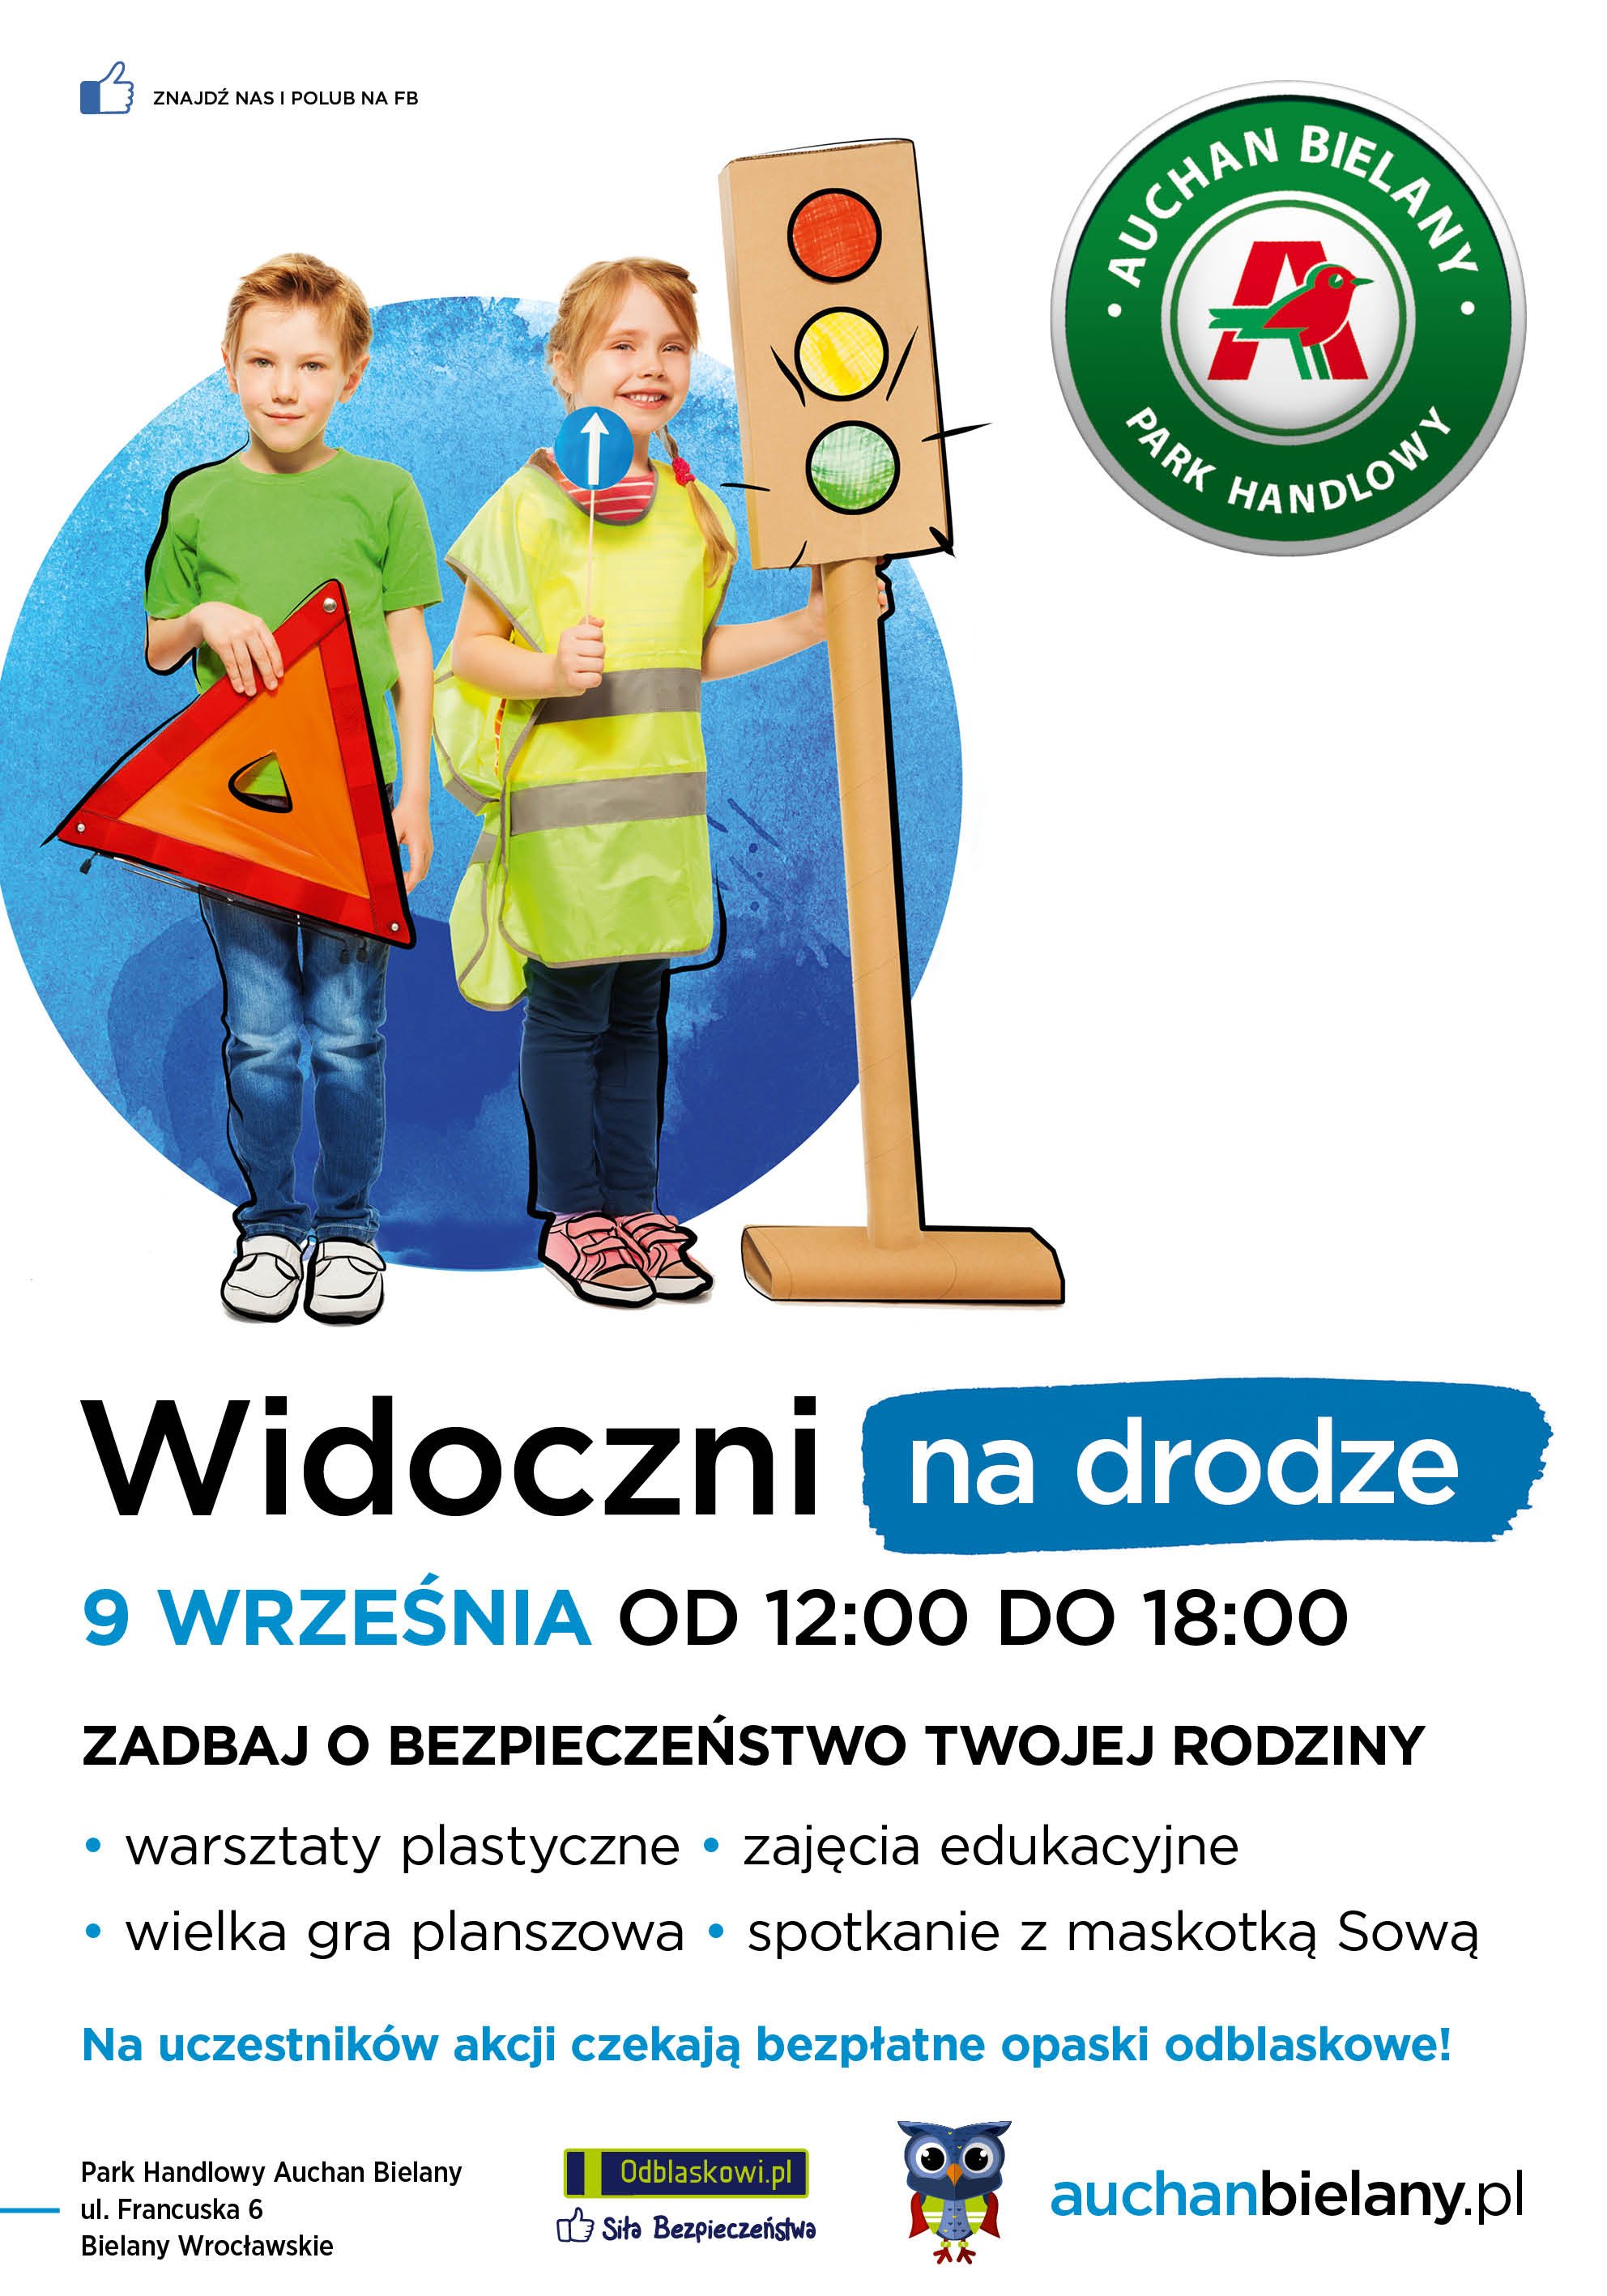 Zadbaj o bezpieczeństwo na drodze z Odblaskowi.pl